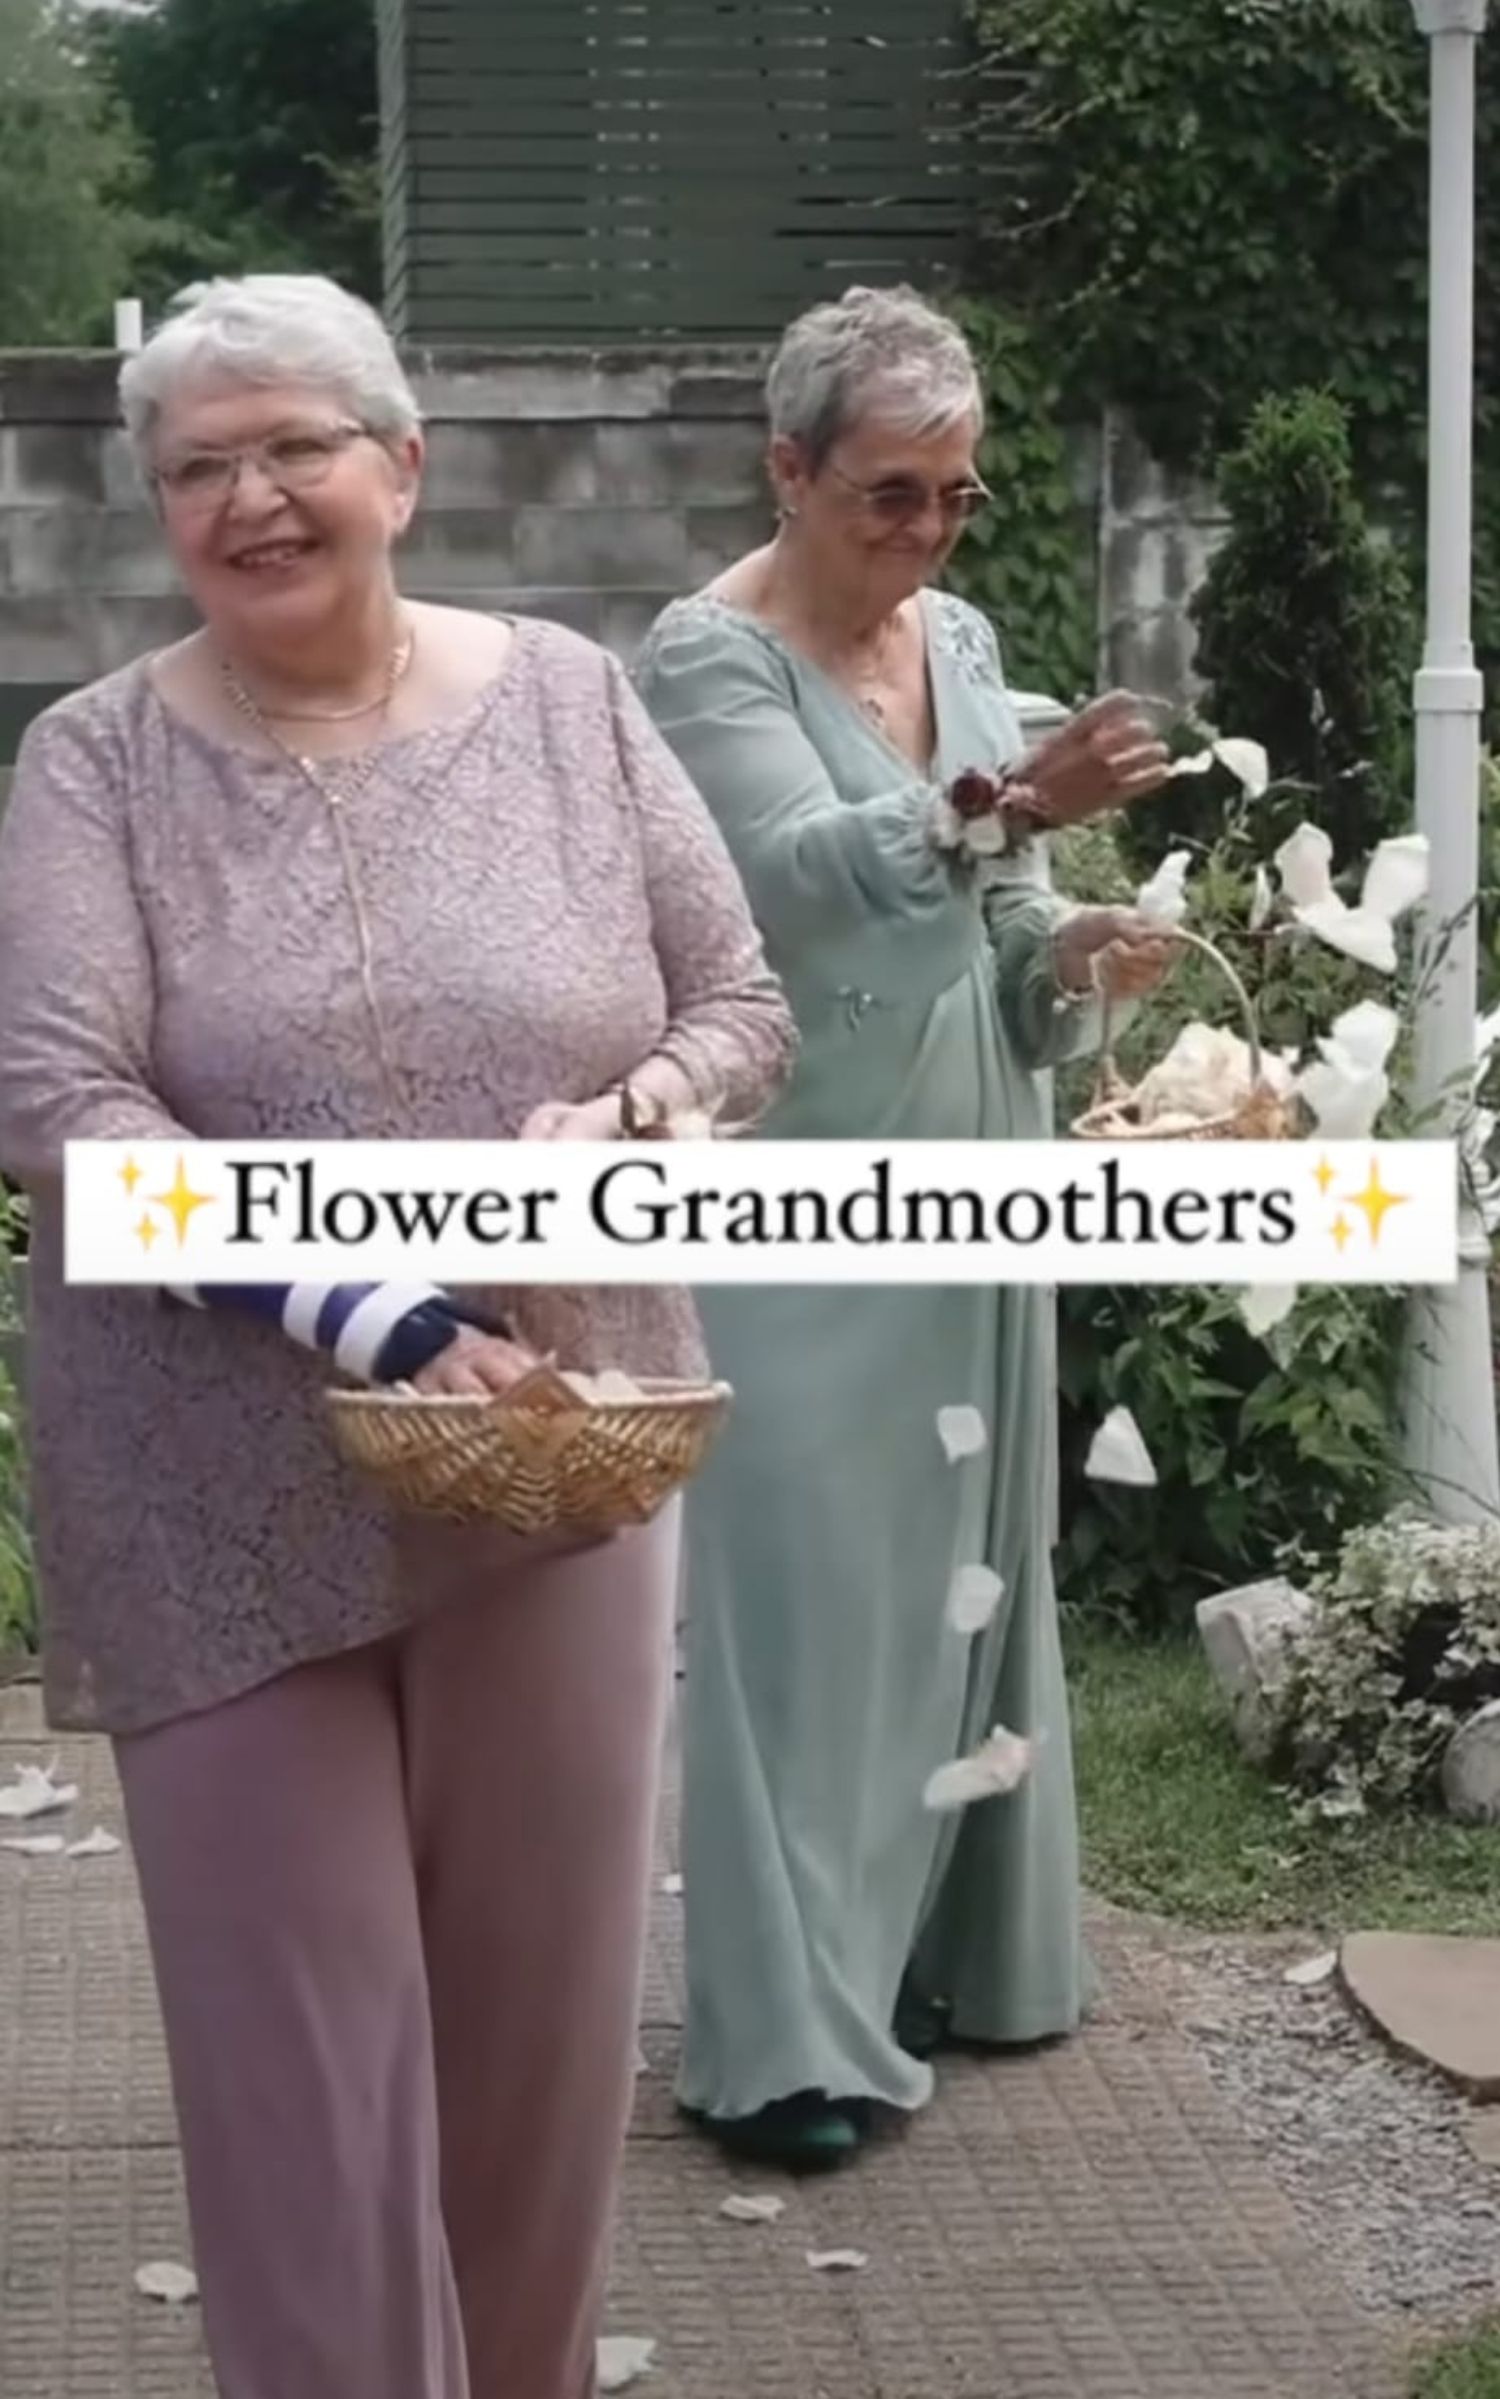 "Las abuelas de las flores", la novedosa idea para una boda que una pareja ha hecho viral